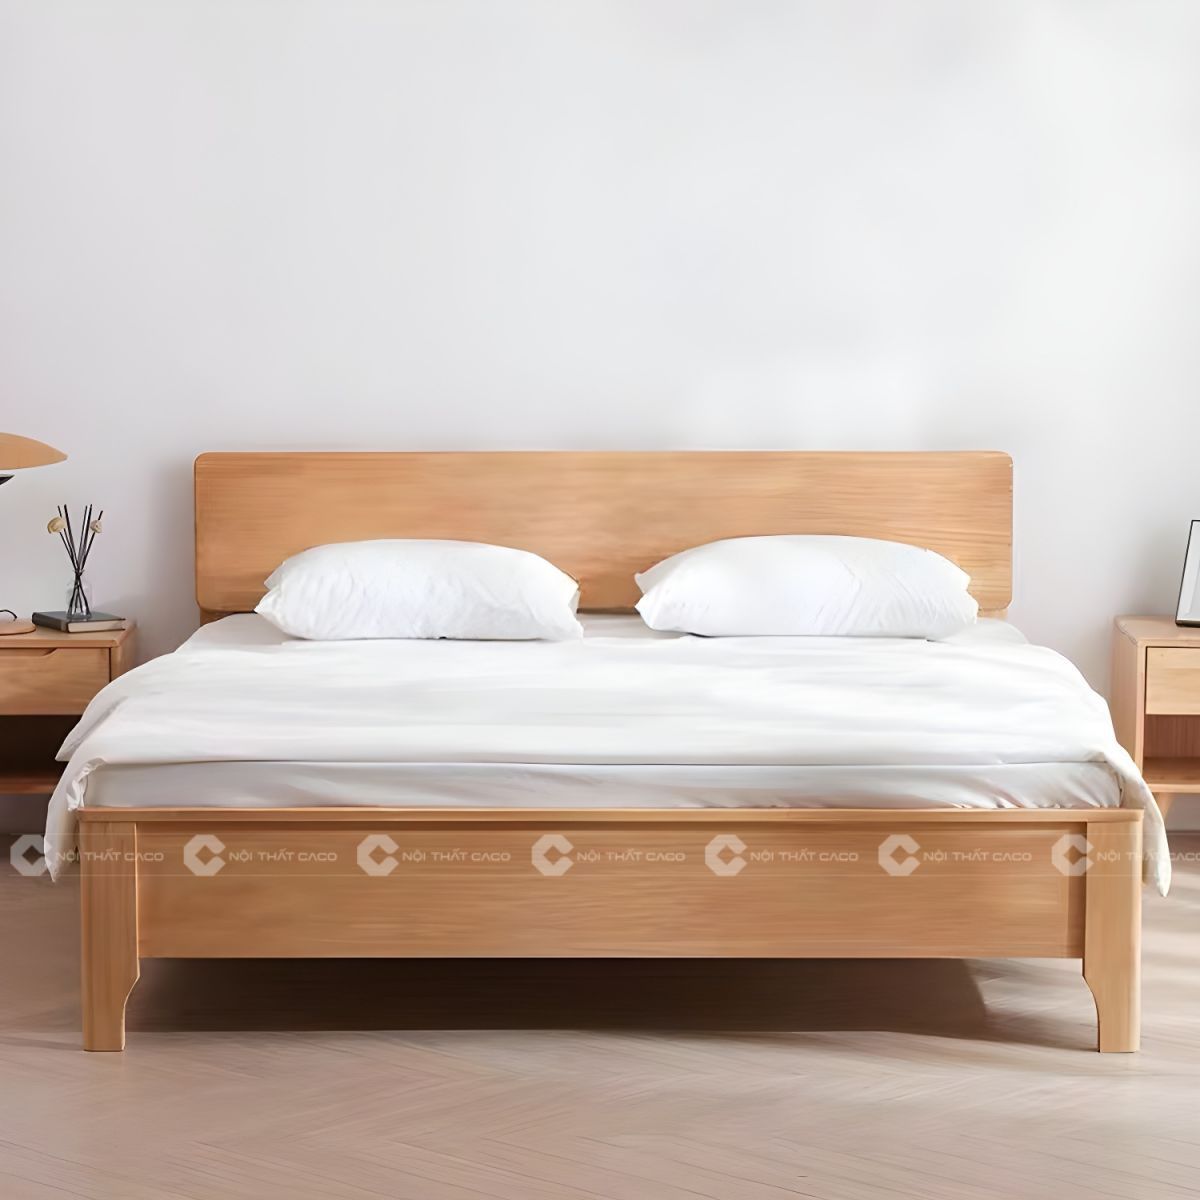 Giường ngủ gỗ tự nhiên sang trọng tinh tế